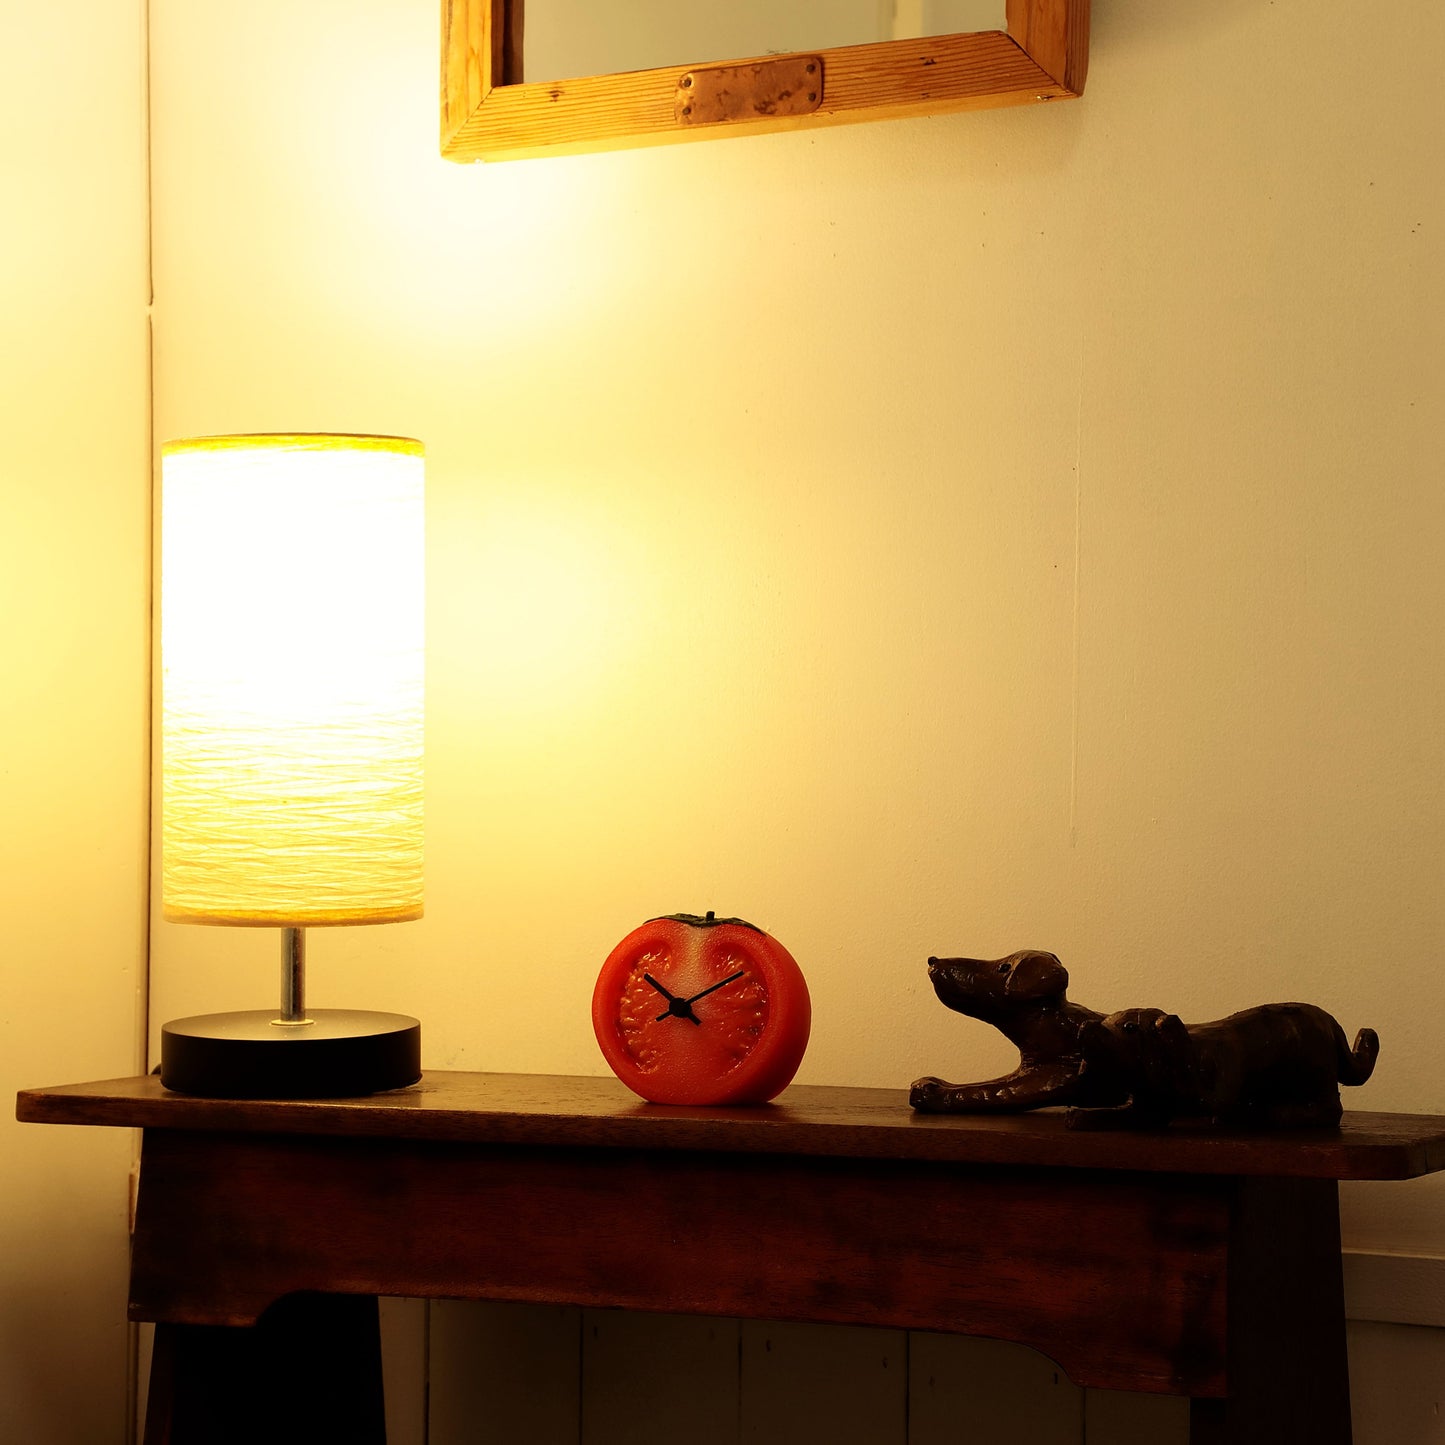 これは元祖食品サンプル屋「Replica Food Clock  トマト」の夜の部屋に置いたイメージ写真です。